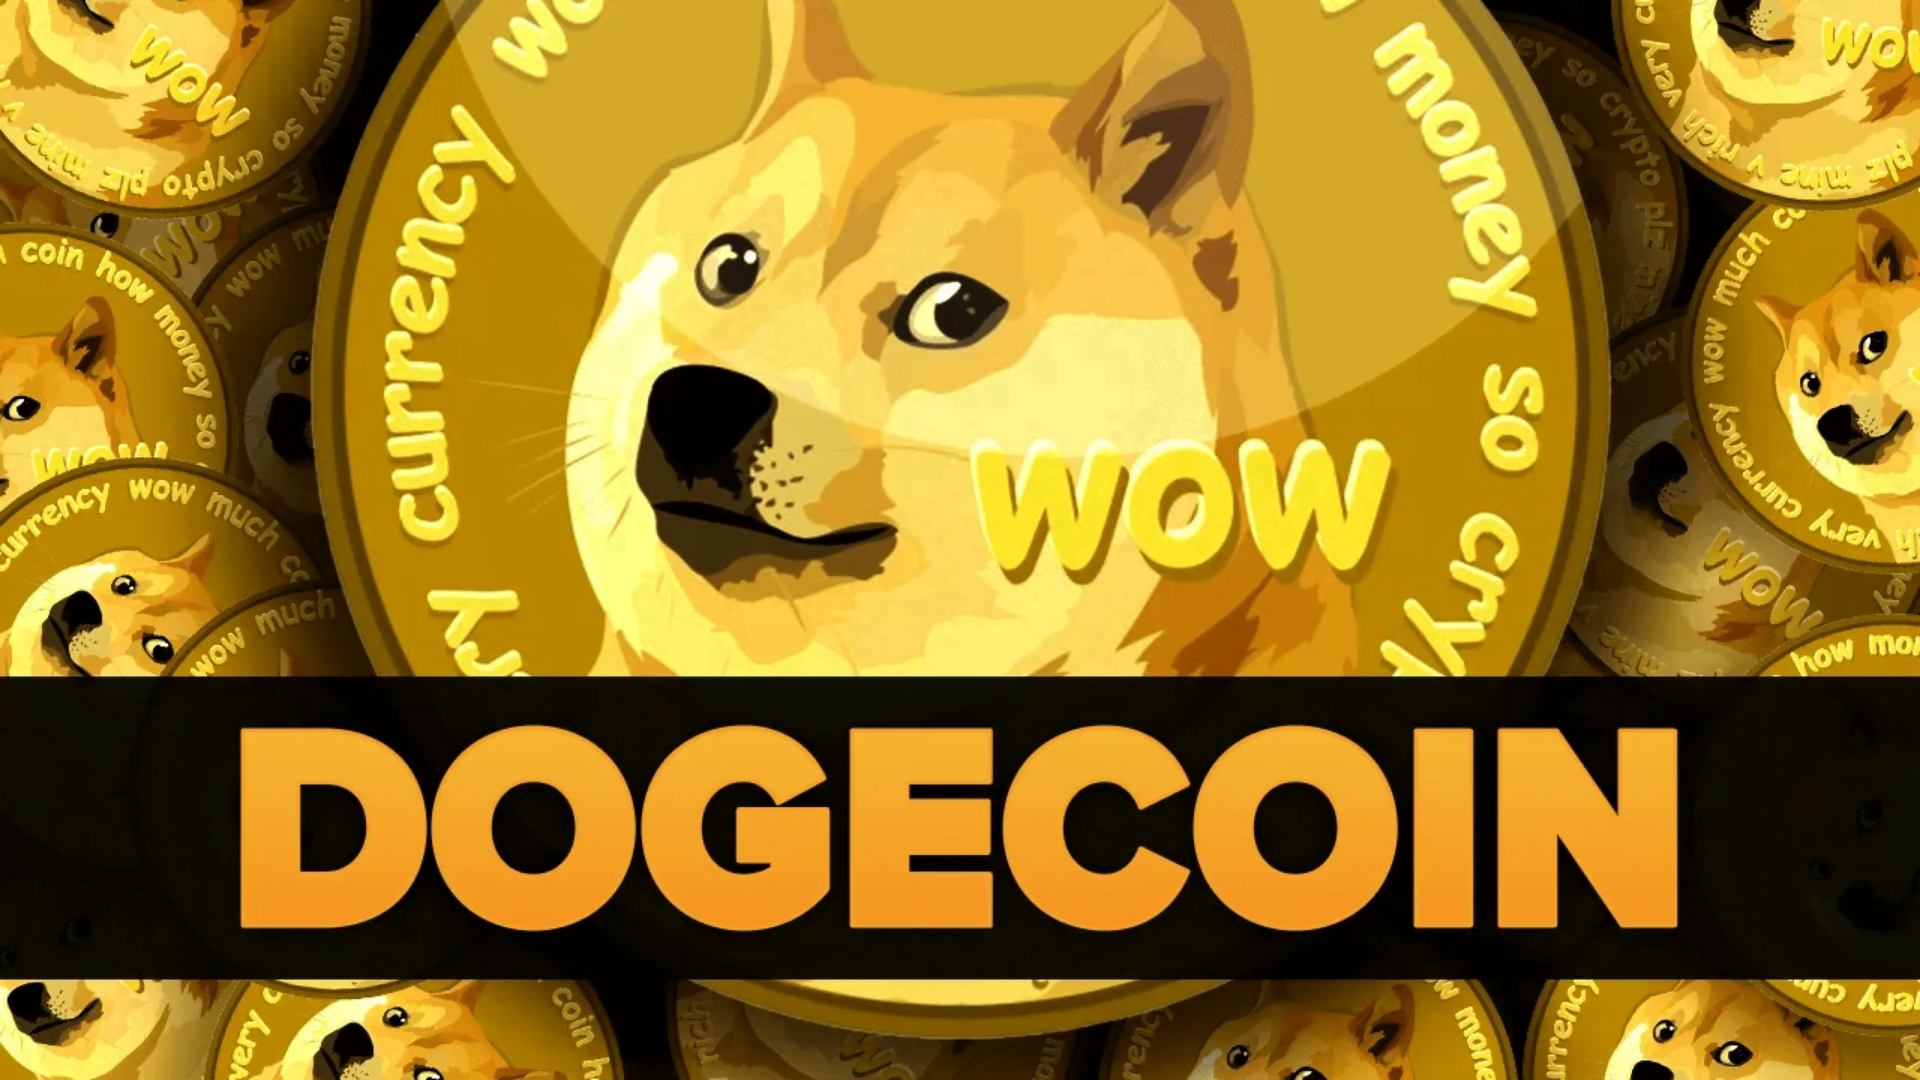 Prediksi Harga Kripto Dogecoin Untuk Tahun 2022